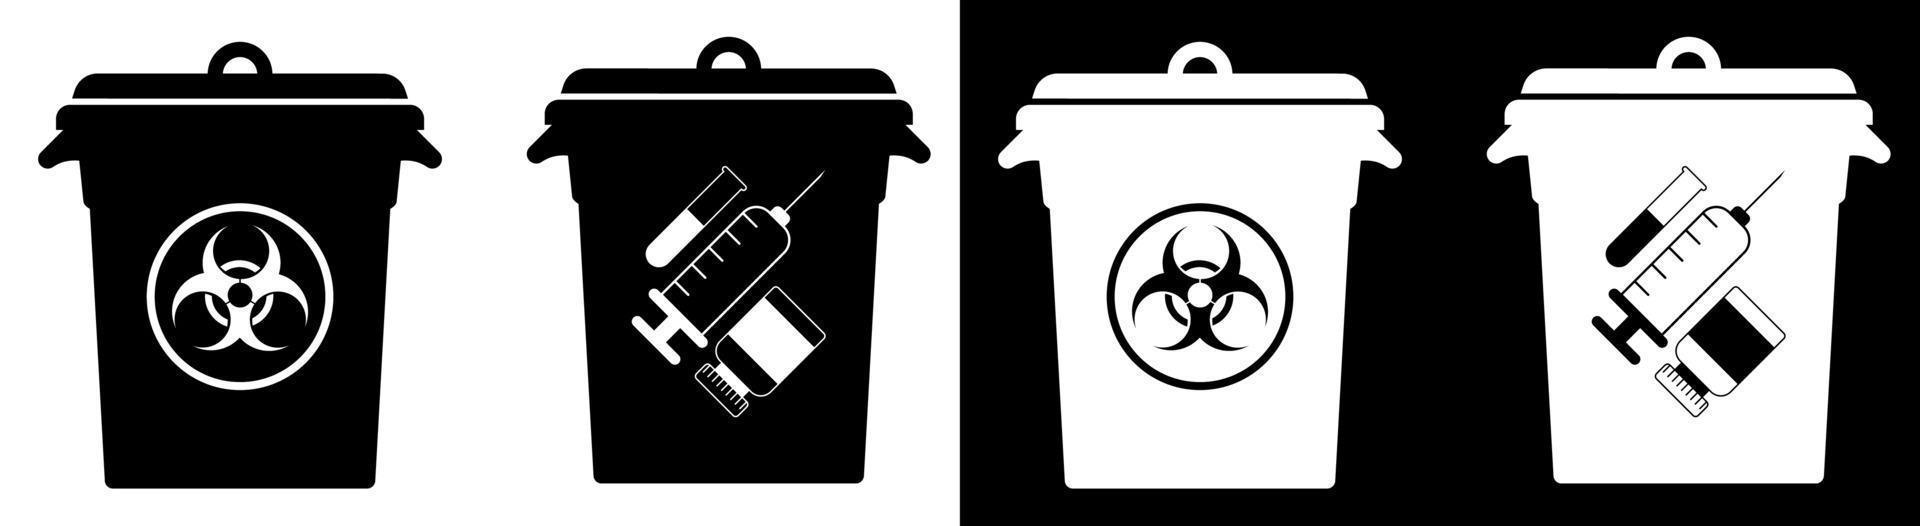 Mülltonnen mit Schildern für gefährliche Abfälle. Entsorgung von Gefahrstoffen, Verarbeitung von Industrieabfällen. Sorge um die Umwelt vektor